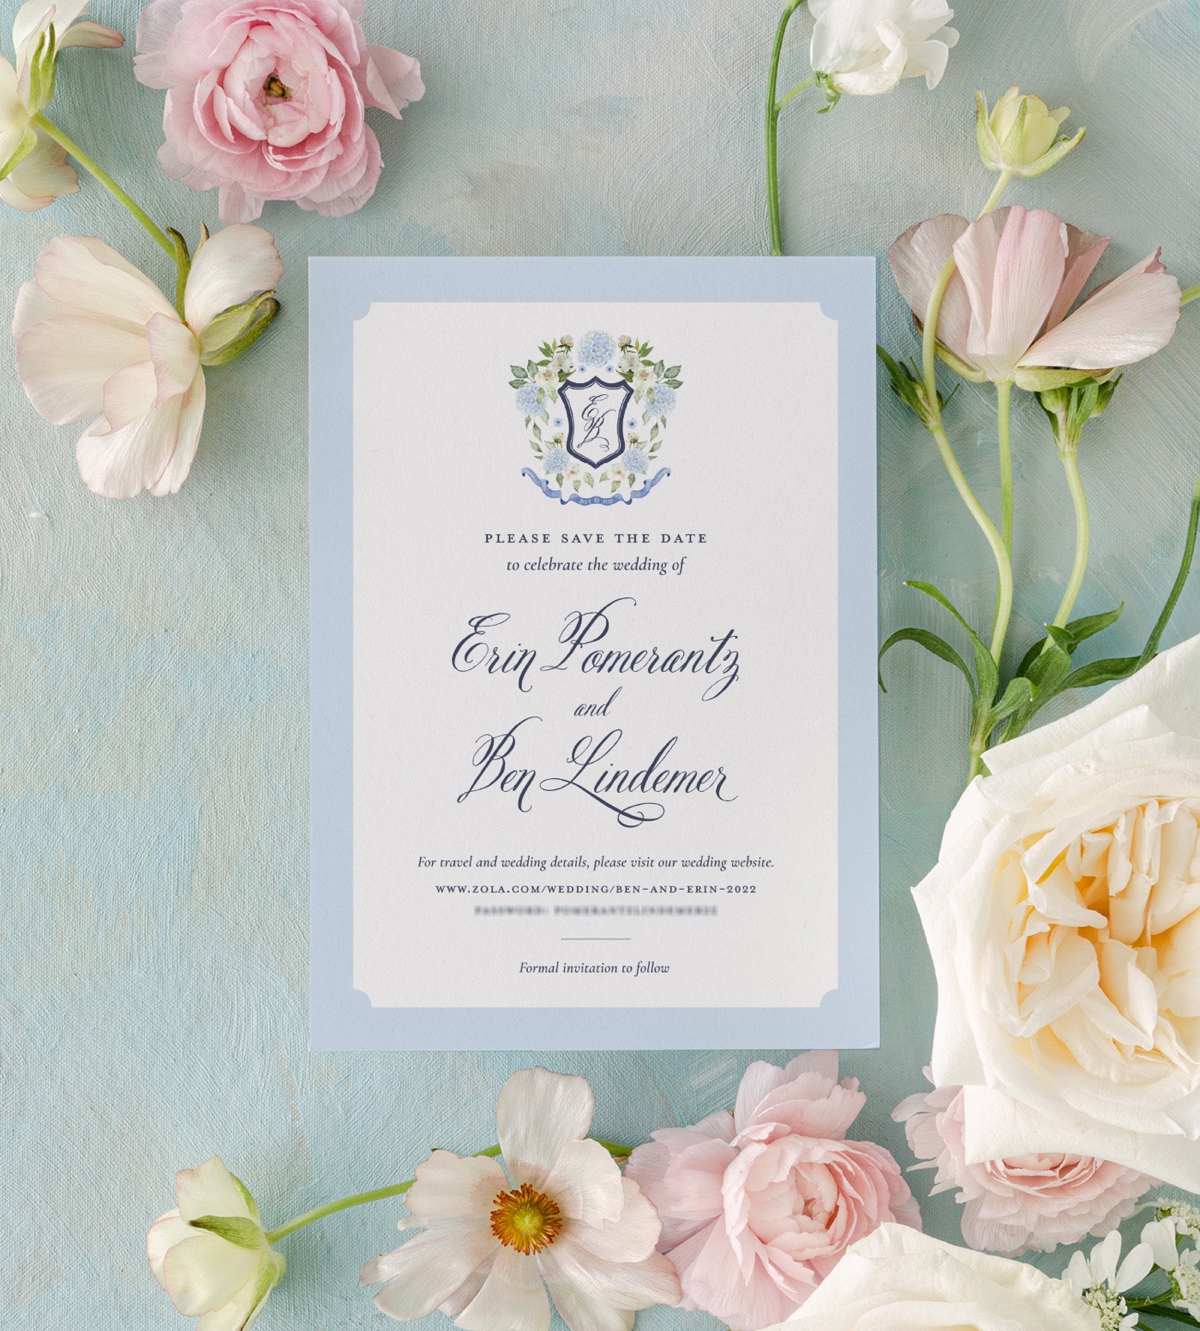 Wedding invitation mistakes to avoid